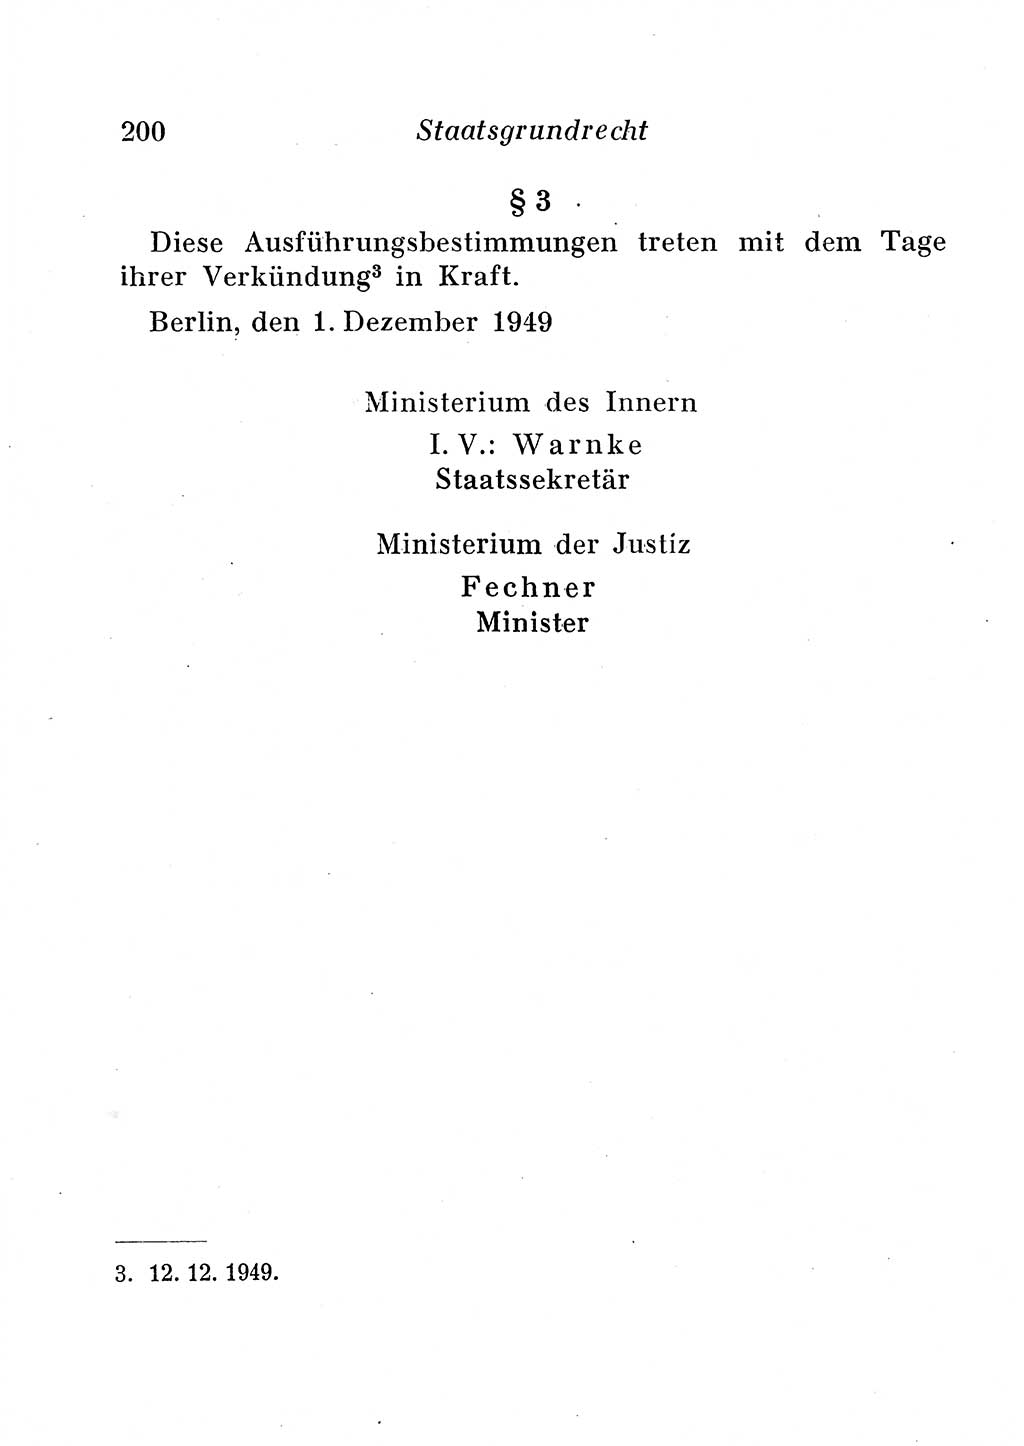 Staats- und verwaltungsrechtliche Gesetze der Deutschen Demokratischen Republik (DDR) 1958, Seite 200 (StVerwR Ges. DDR 1958, S. 200)